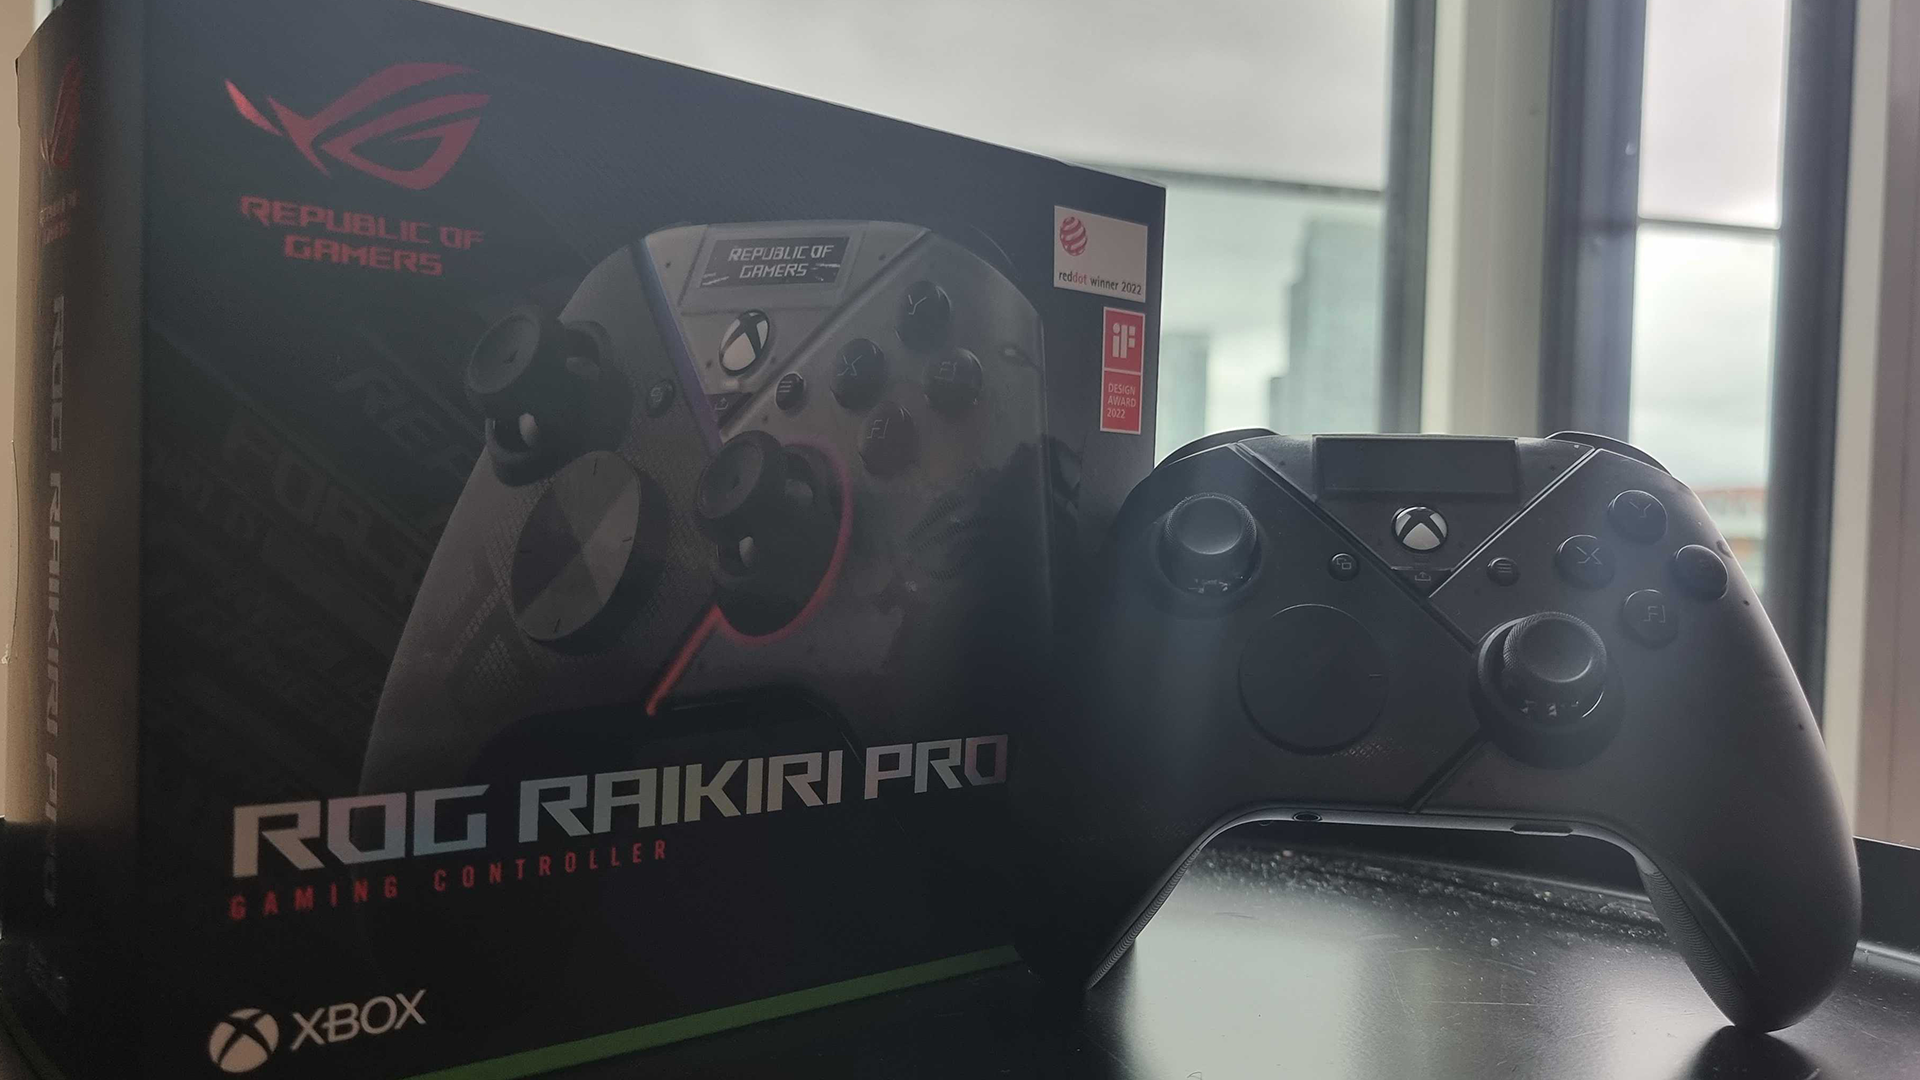 Asus ROG Raikiri Pro Controller Review - PowerUp!